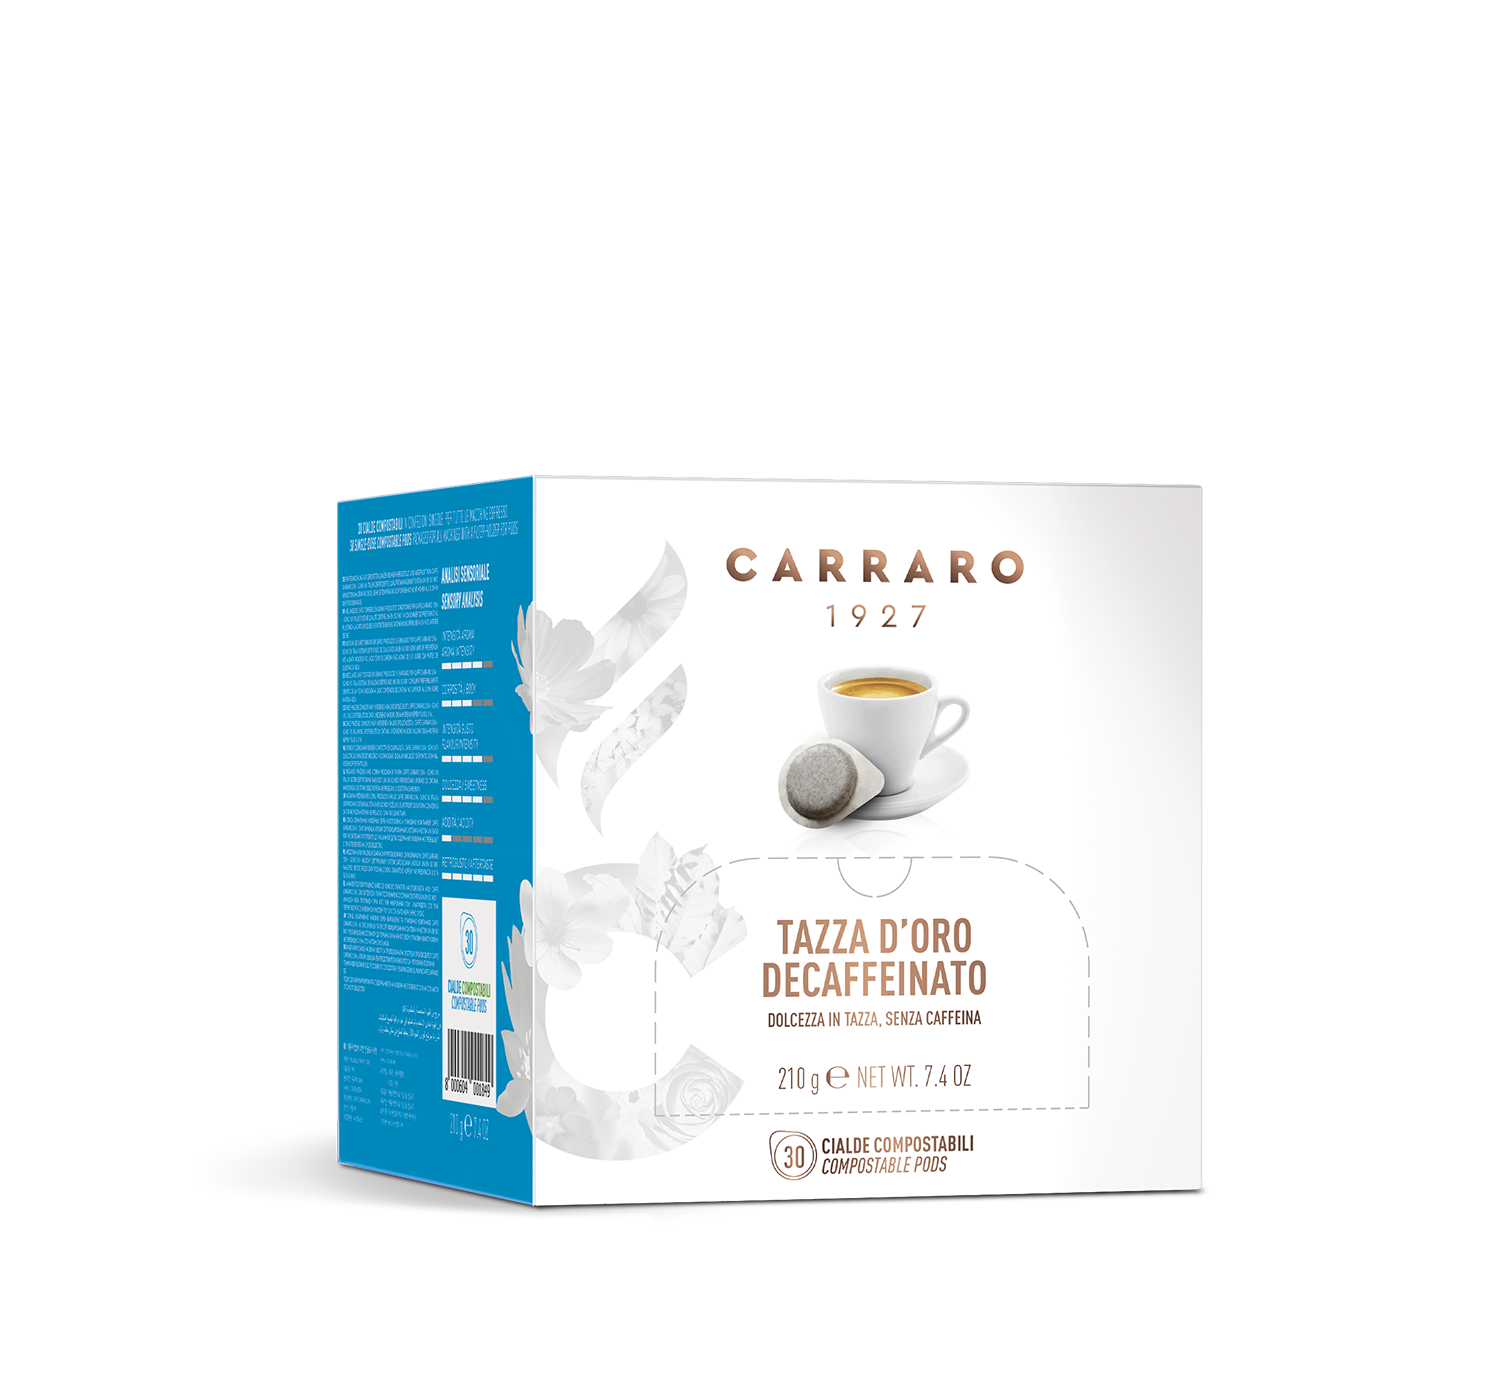 Ho.Re.Ca. - Tazza d’Oro decaffeinato – box with 30 pods - Shop online Caffè Carraro